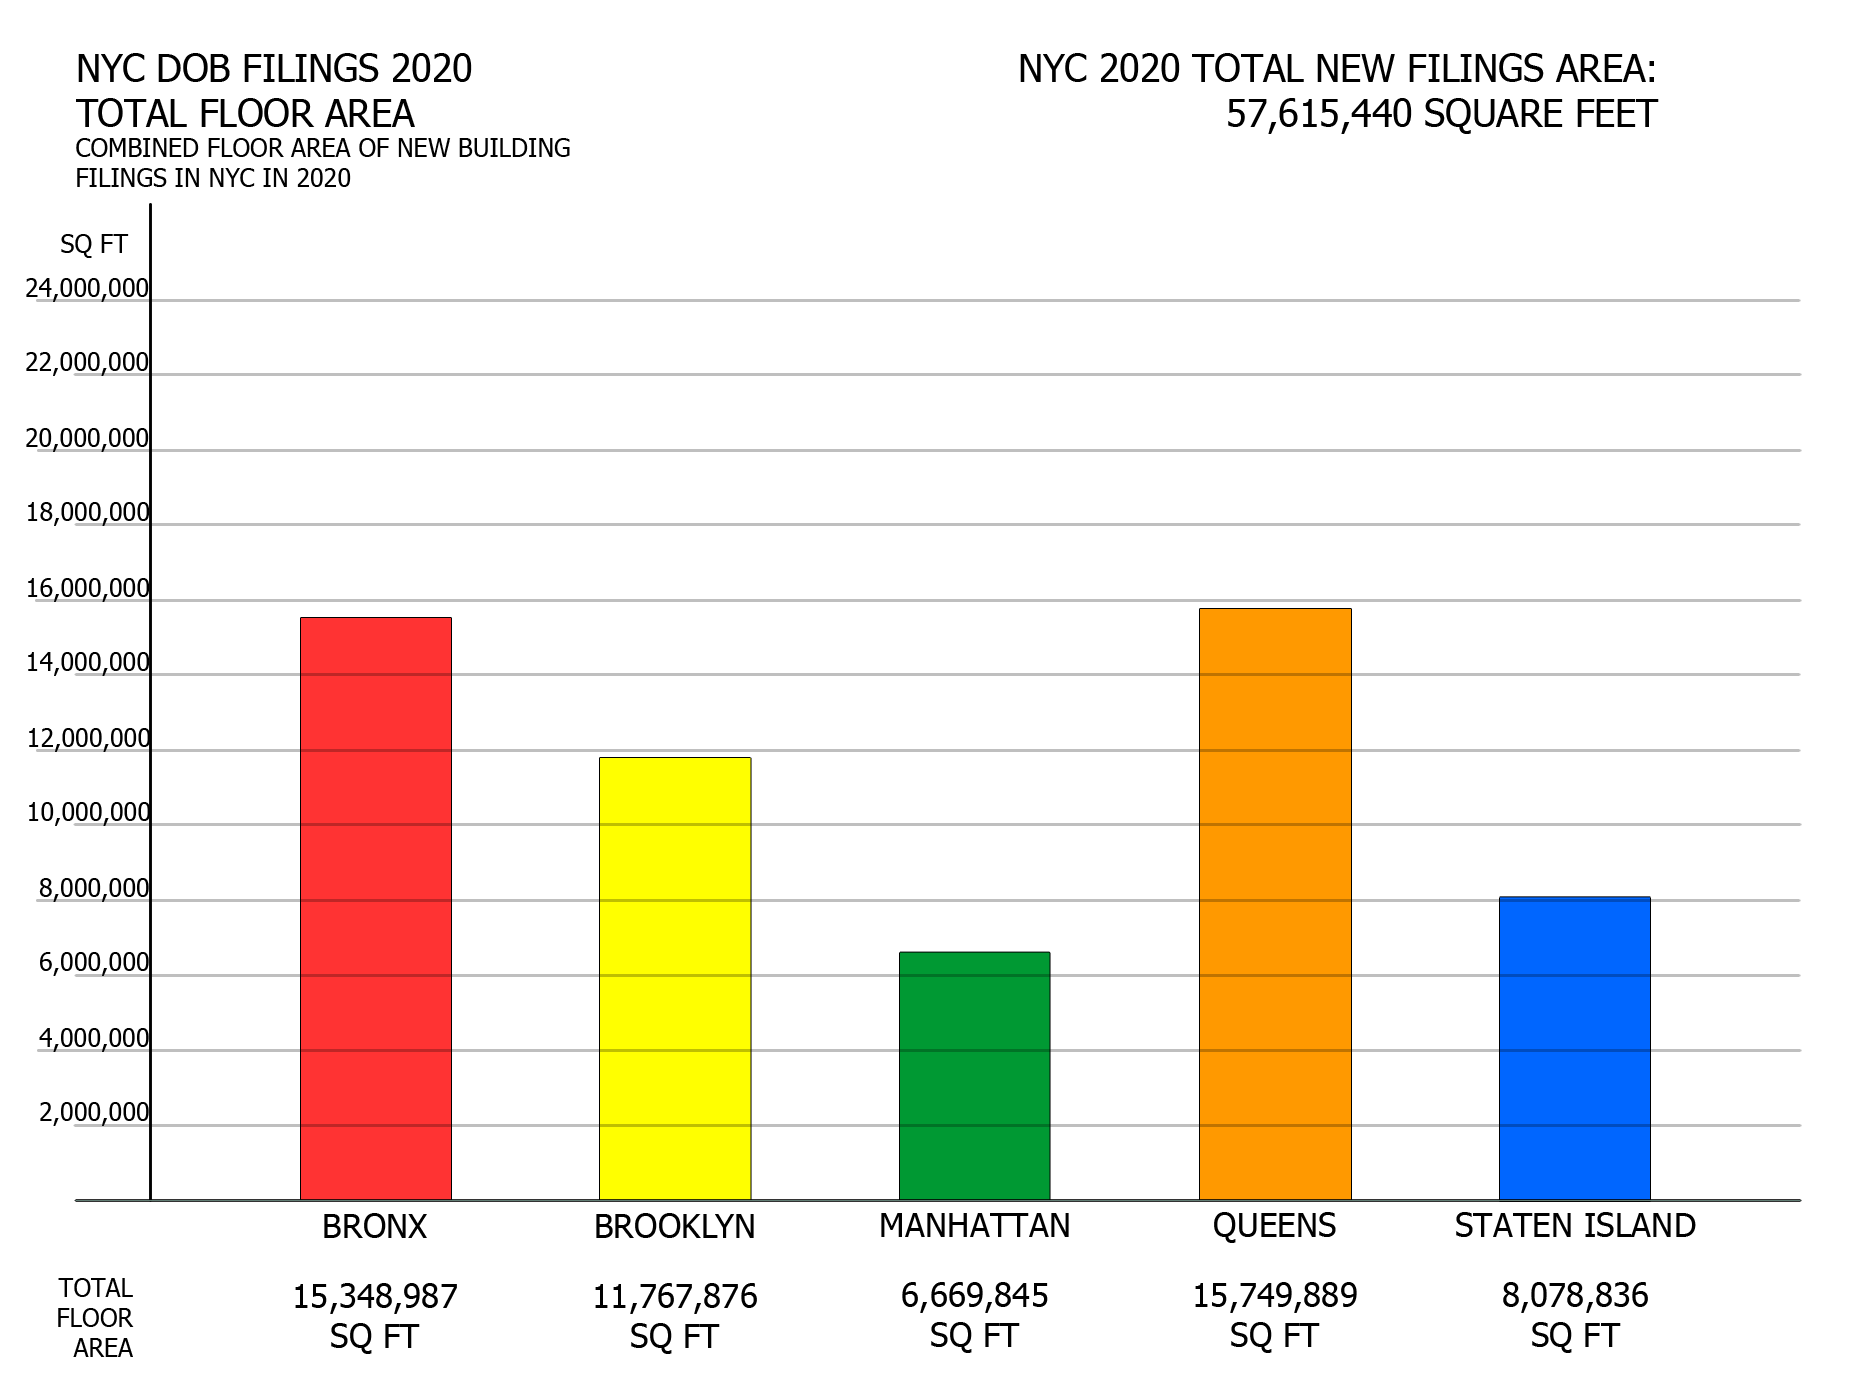 NYC DOB filings in 2020 by total floor area. Credit: Vitali Ogorodnikov